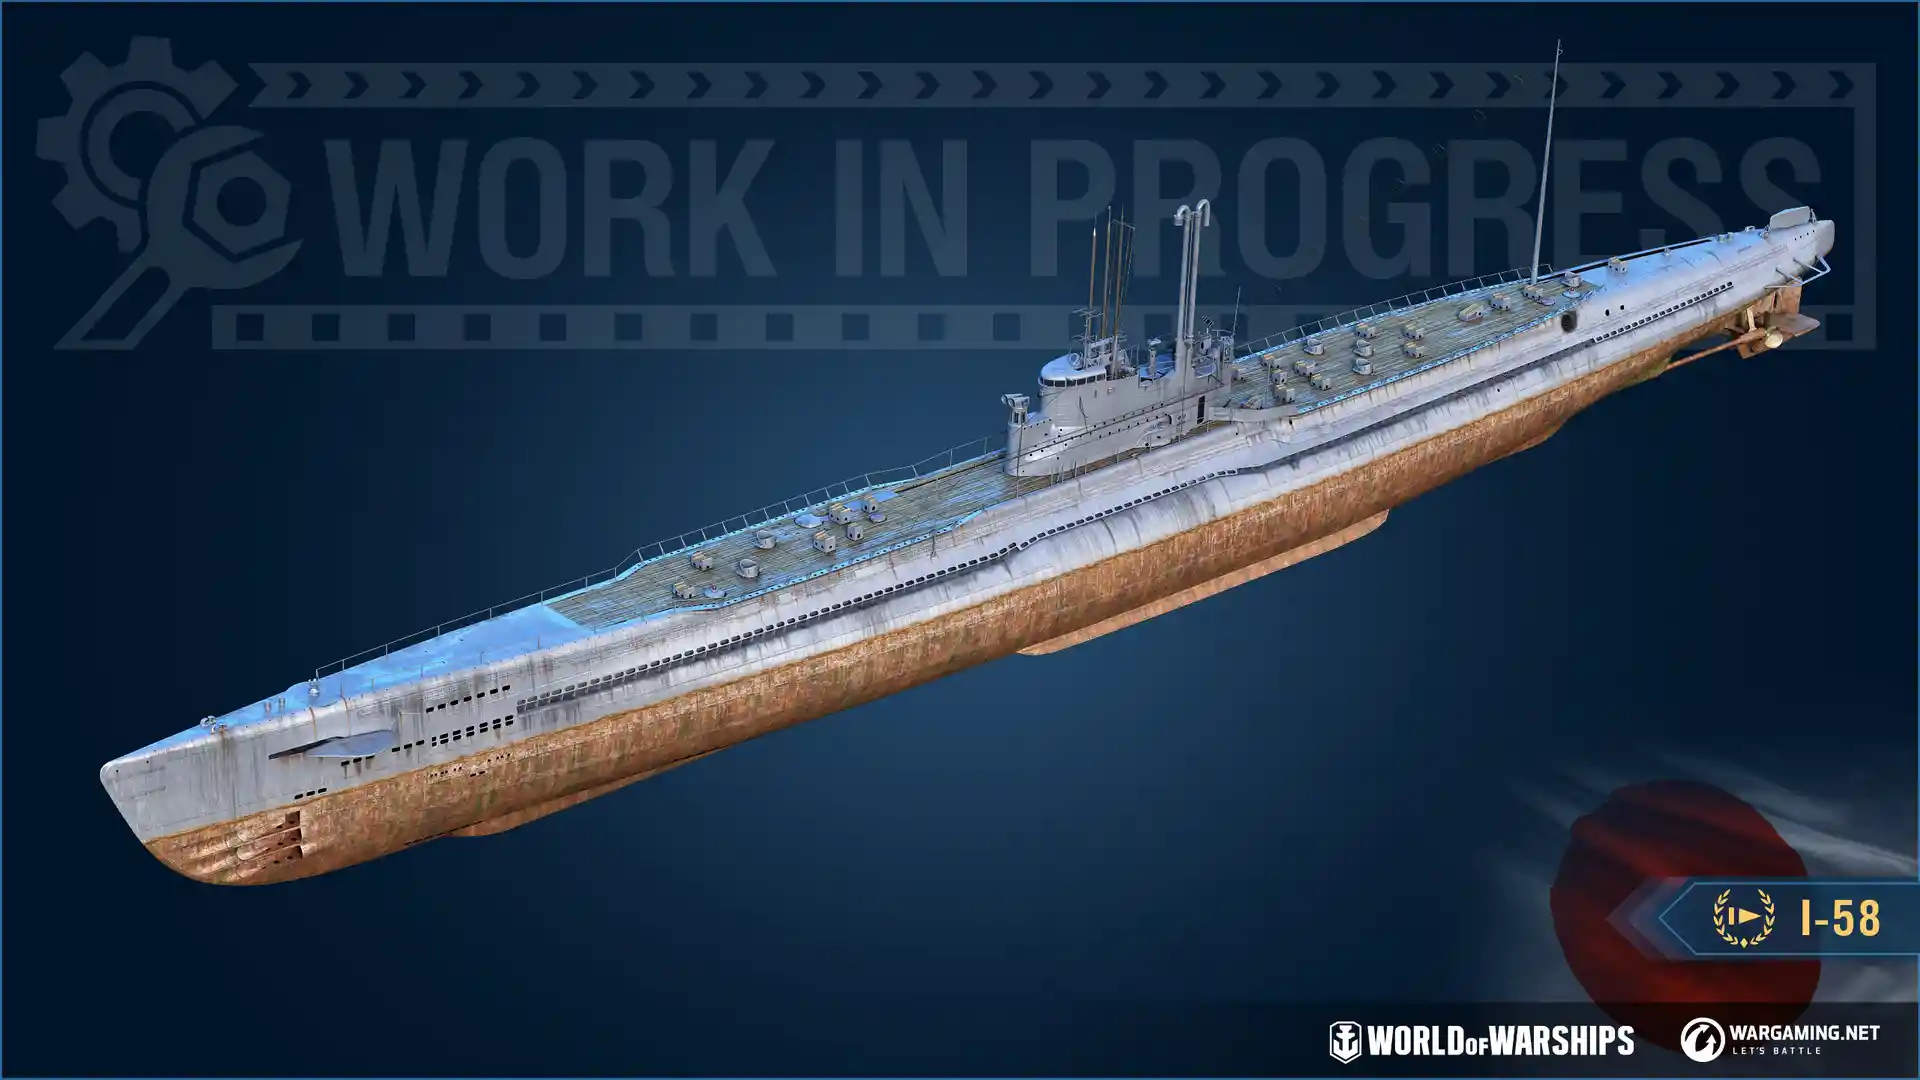 I-58 - World of Warships Wiki*